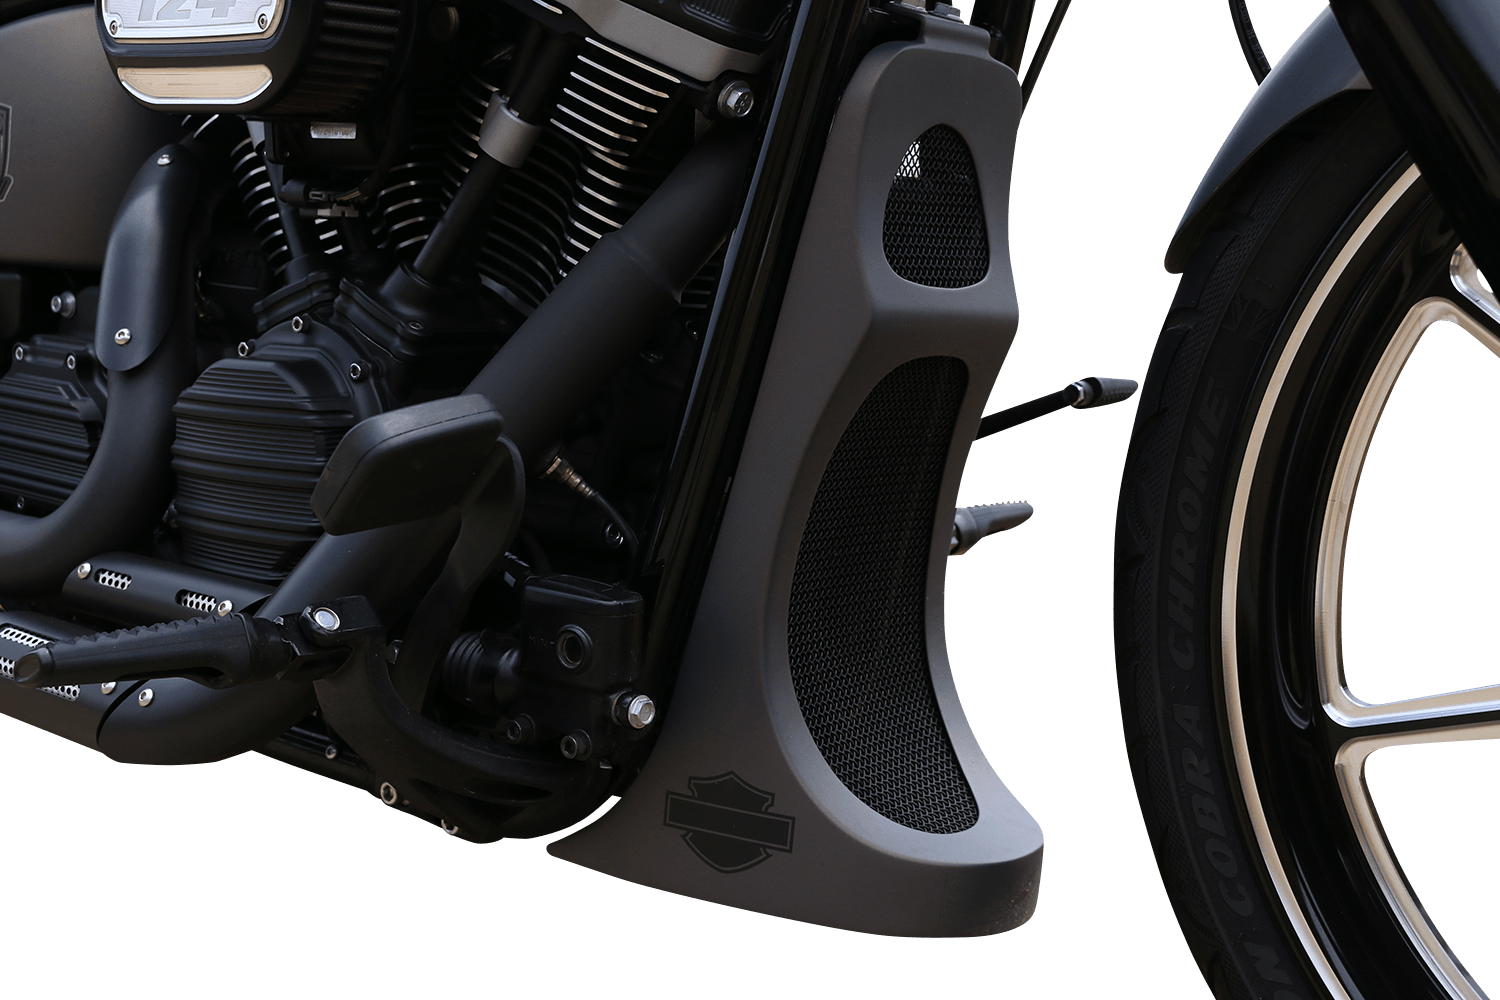 KODLIN-Chin Spoiler / M8-Chin Spoiler-MetalCore Harley Supply